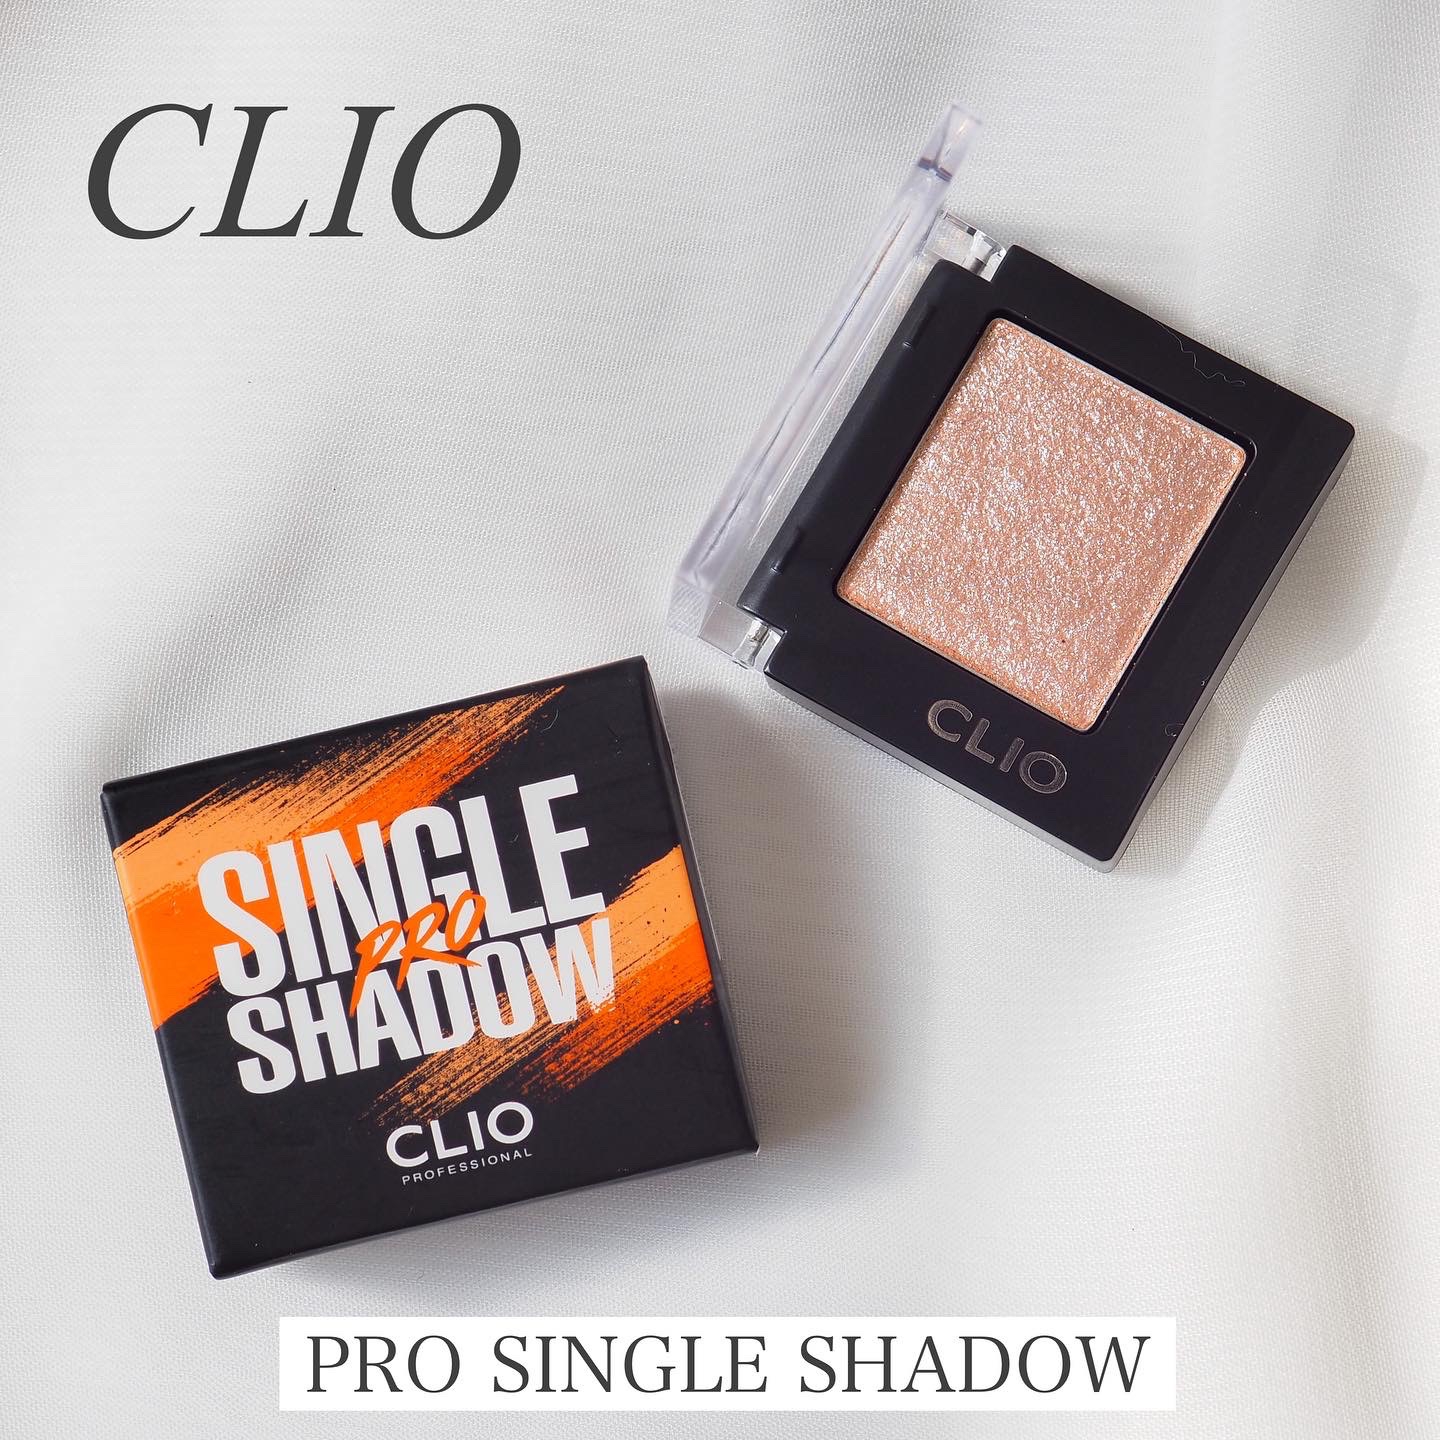 CLIO(クリオ) プロ シングル シャドウの良い点・メリットに関するaquaさんの口コミ画像1